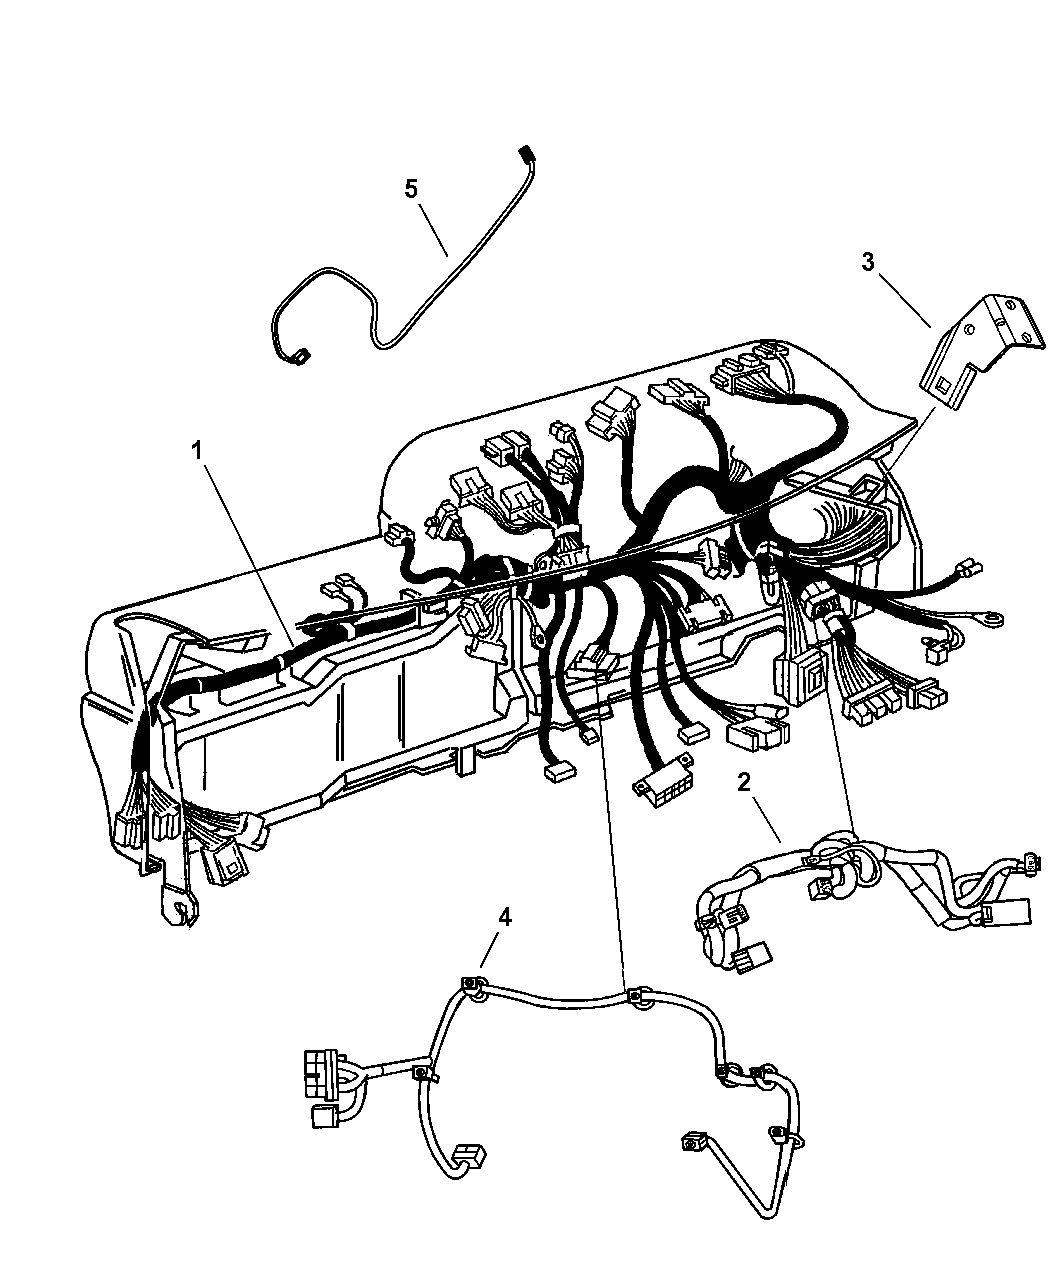 Ram 5500 Wiring Diagram